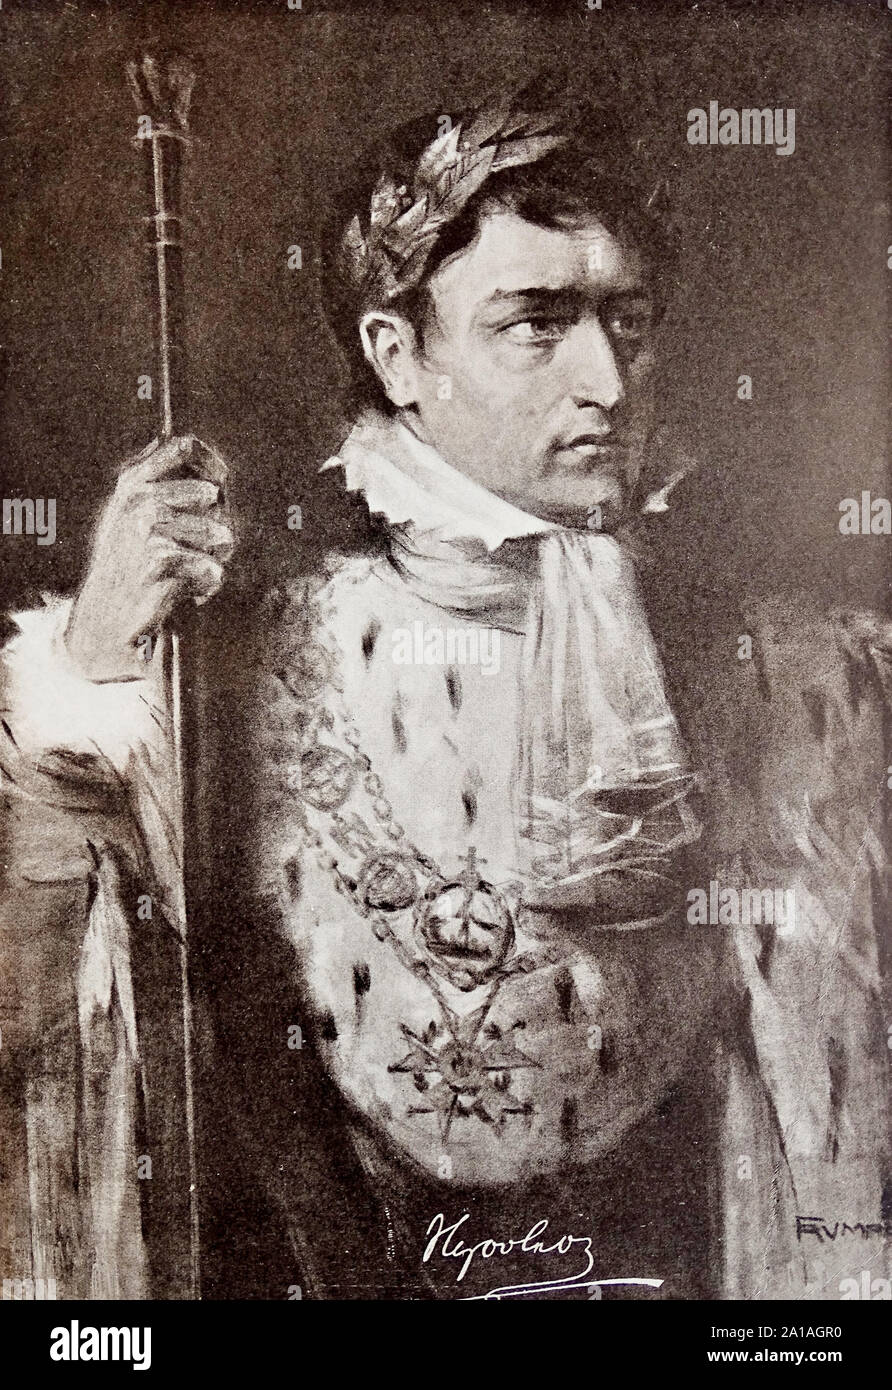 Porträt von Napoleon I Bonaparte. Gravur des 19. Jahrhunderts. Stockfoto